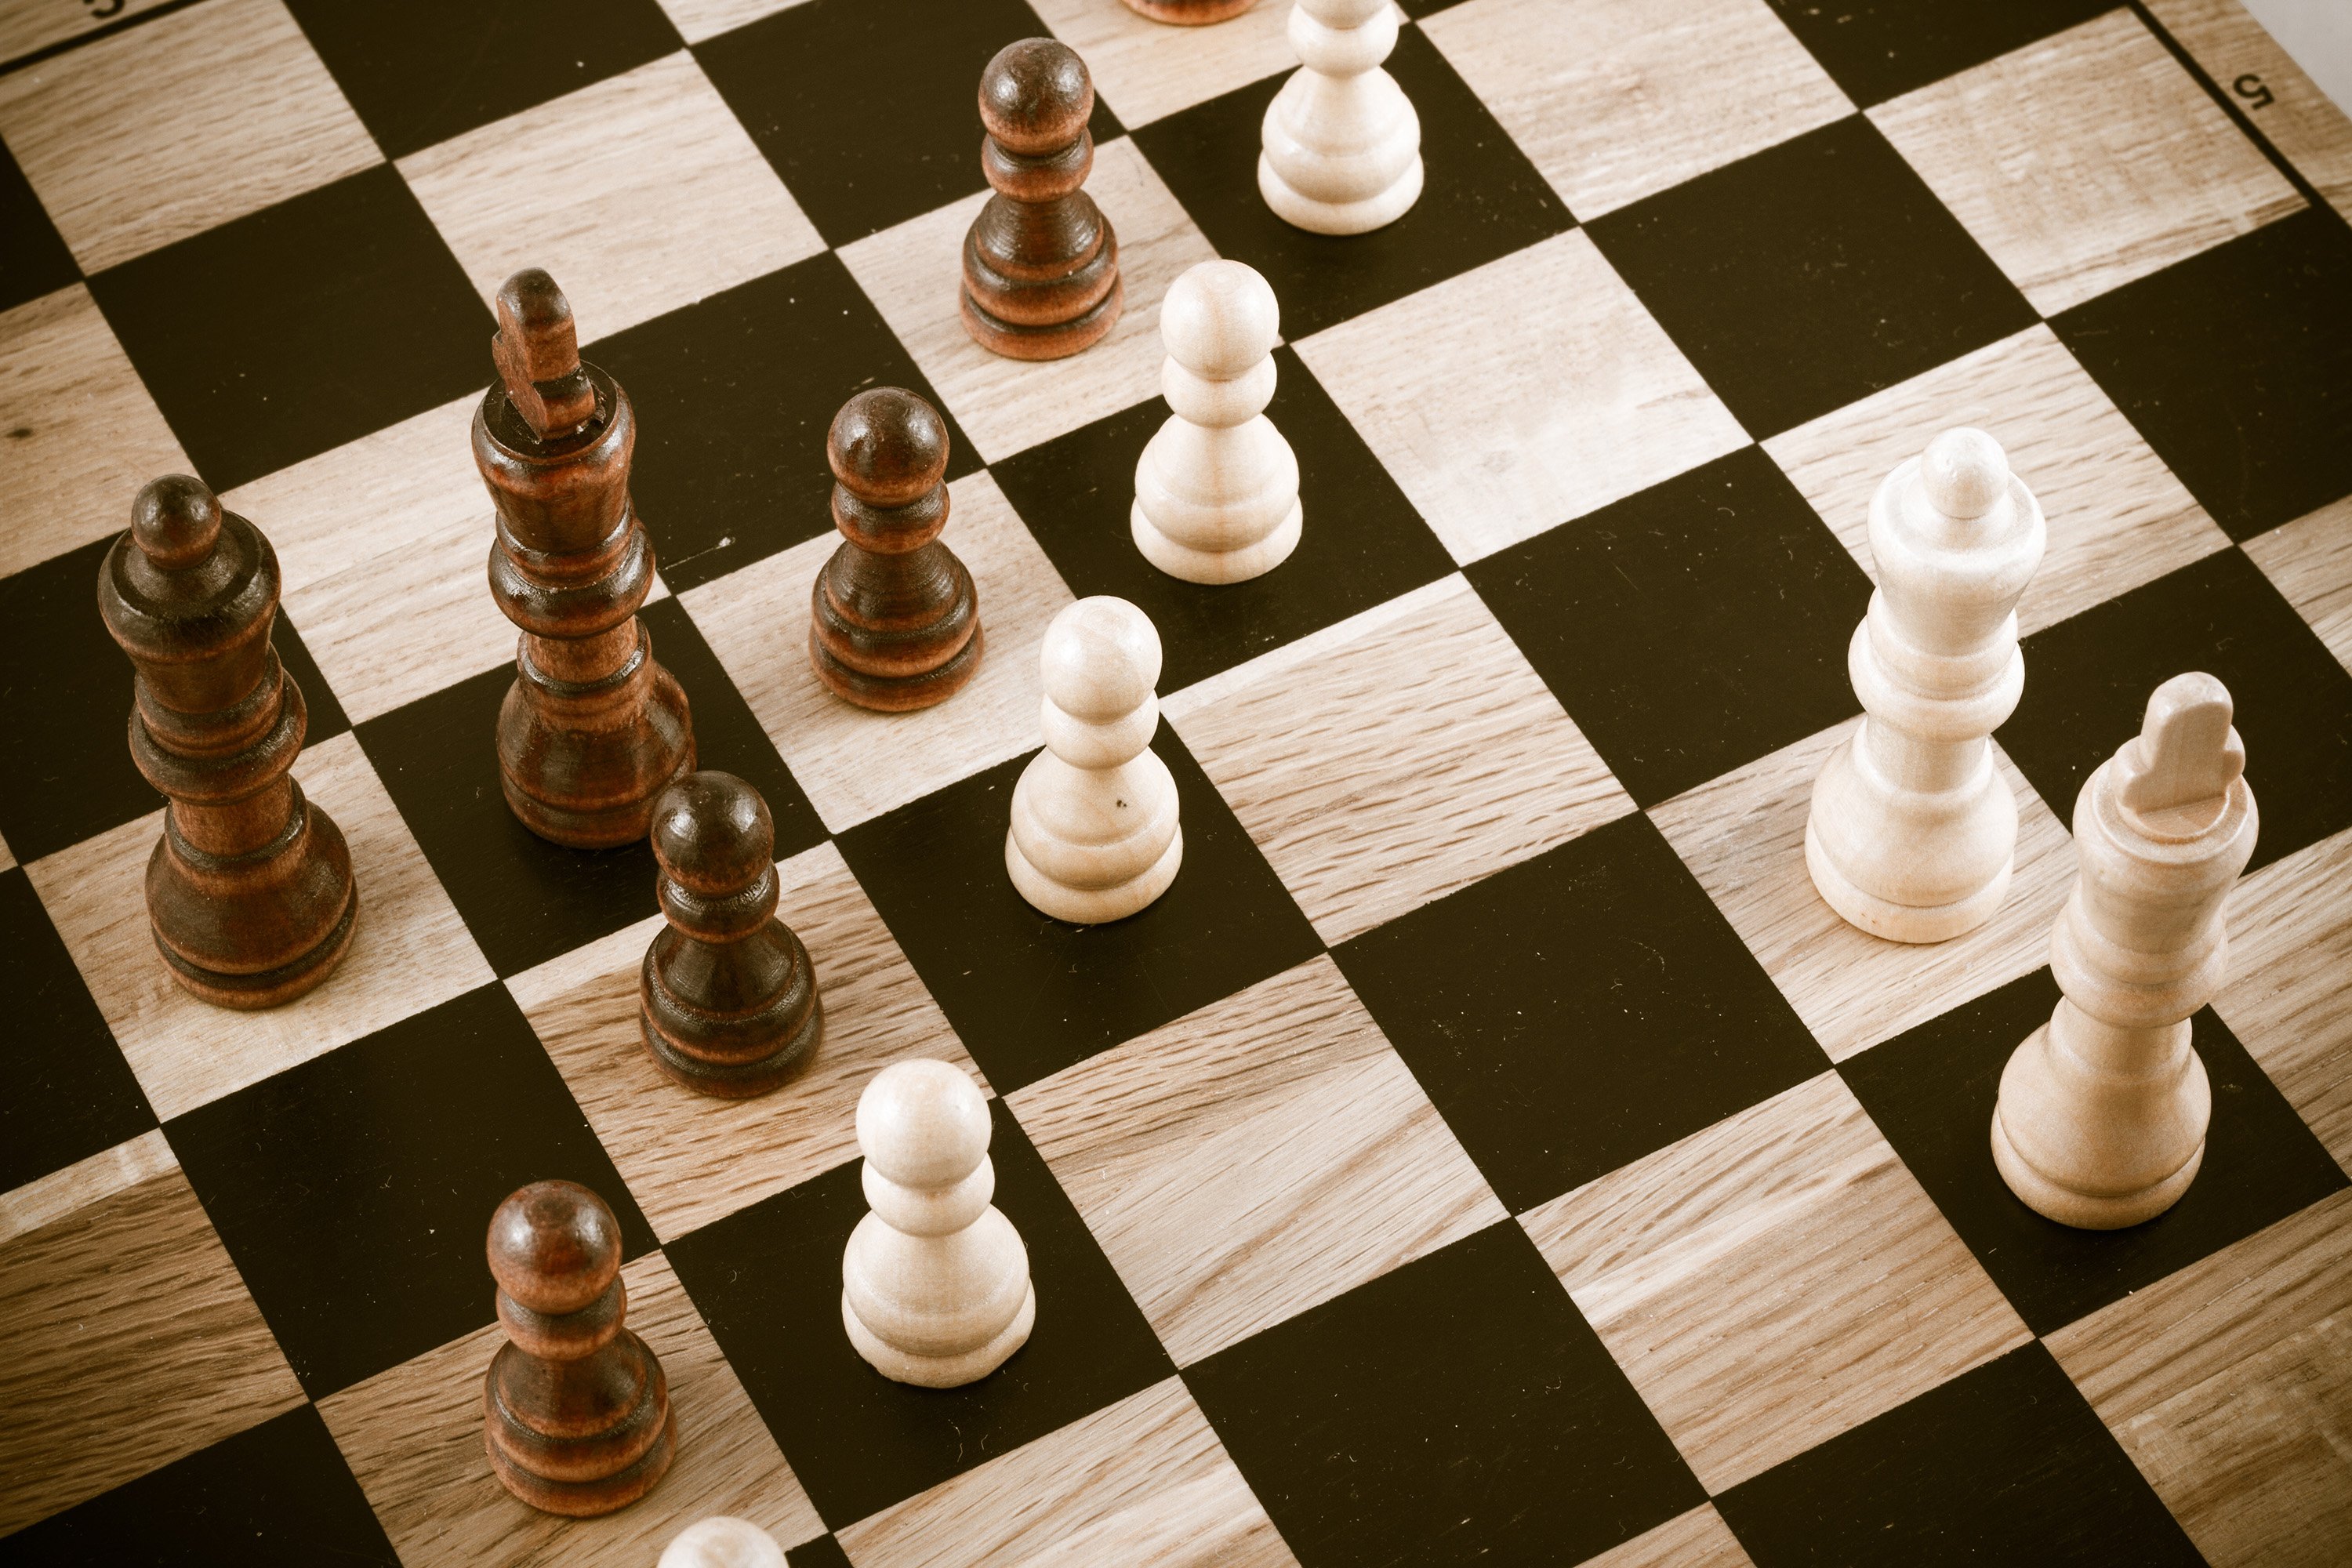 Игры шахматного типа. Игра шахматы. Шахматный фон. Шахматная игра. Шахматная доска в перспективе.